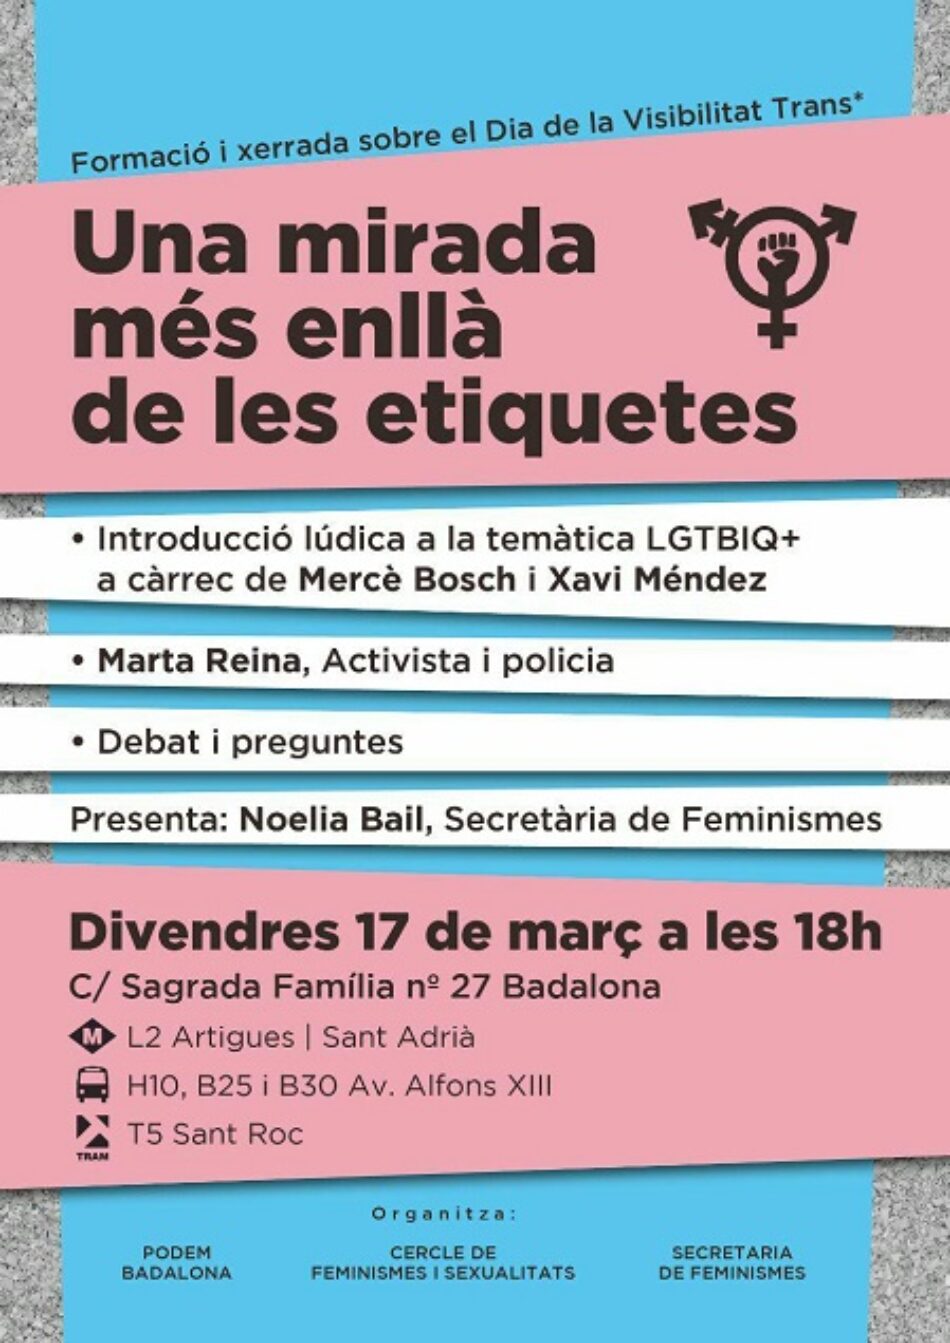 El Cercle de Feminismes i Sexualitats de Podem Catalunya i Podem Badalona organitzen un Taller / Formació LGTBQ